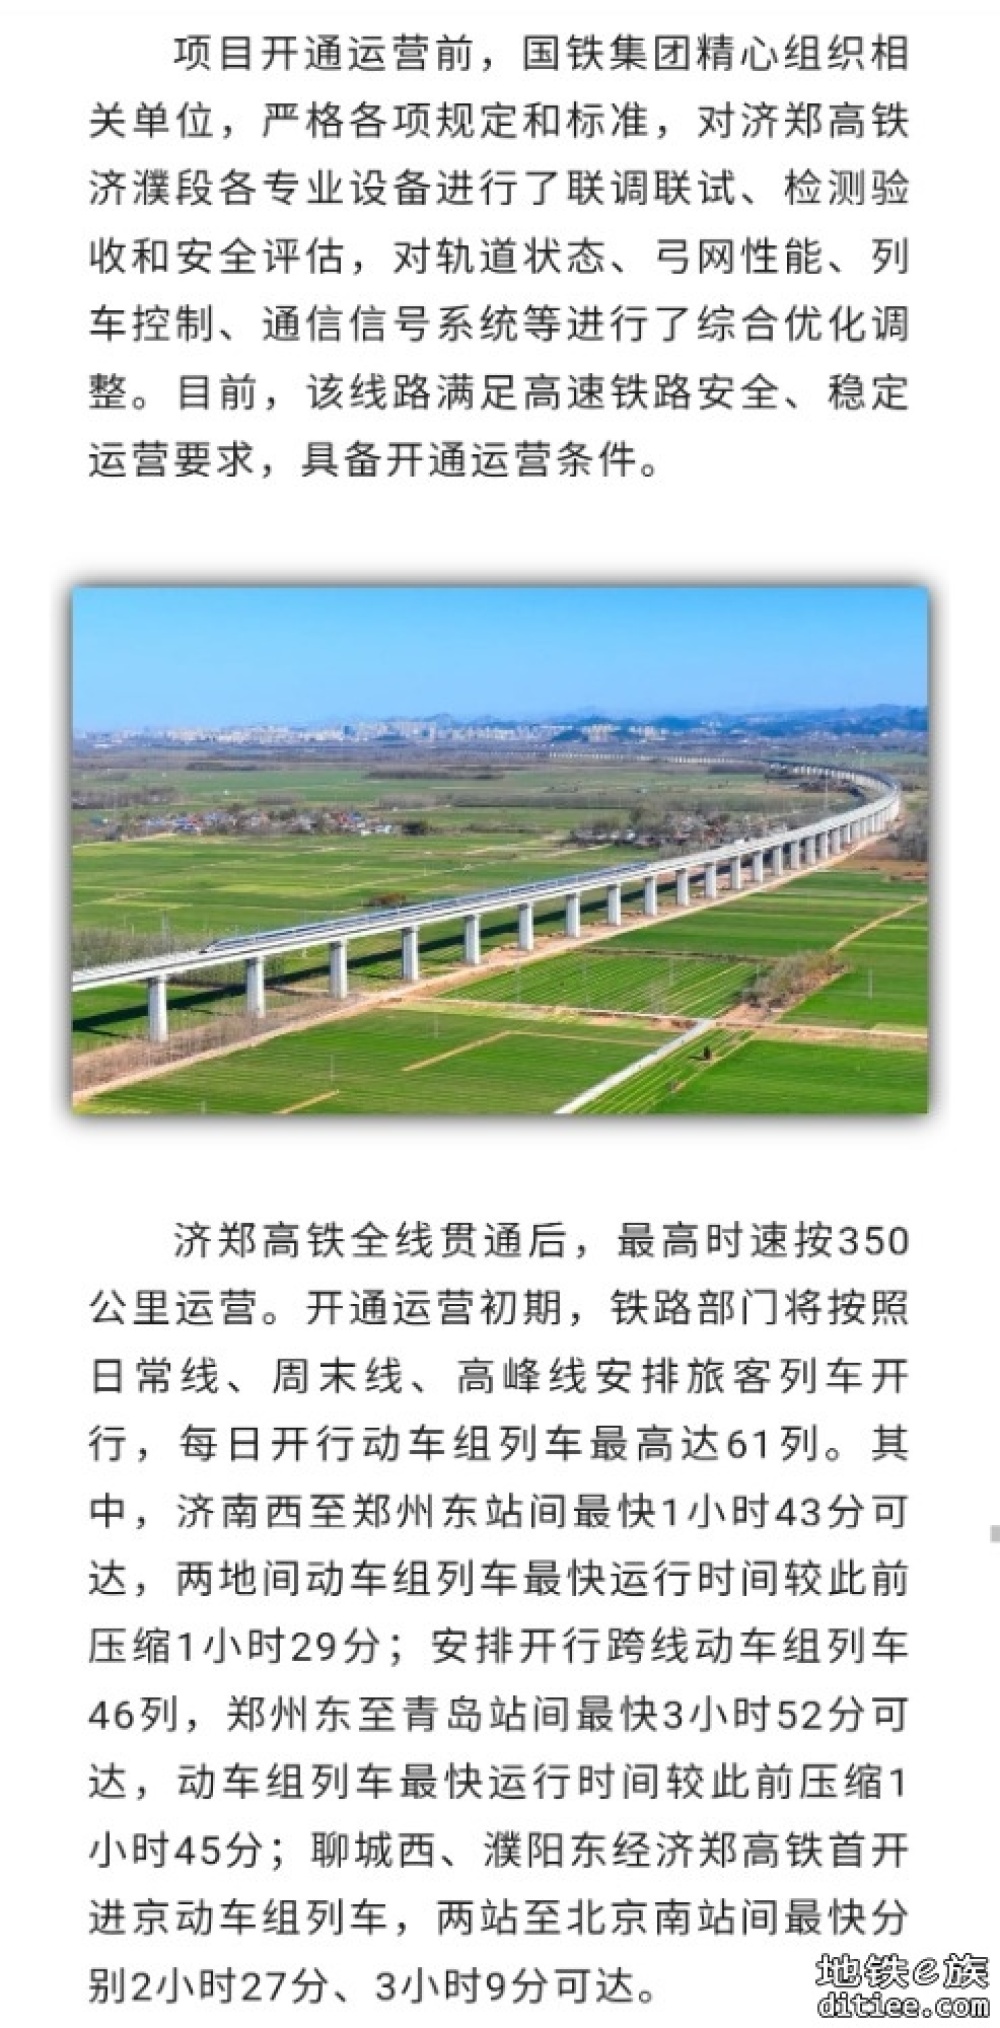 济南至郑州高速铁路12月8日全线贯通运营